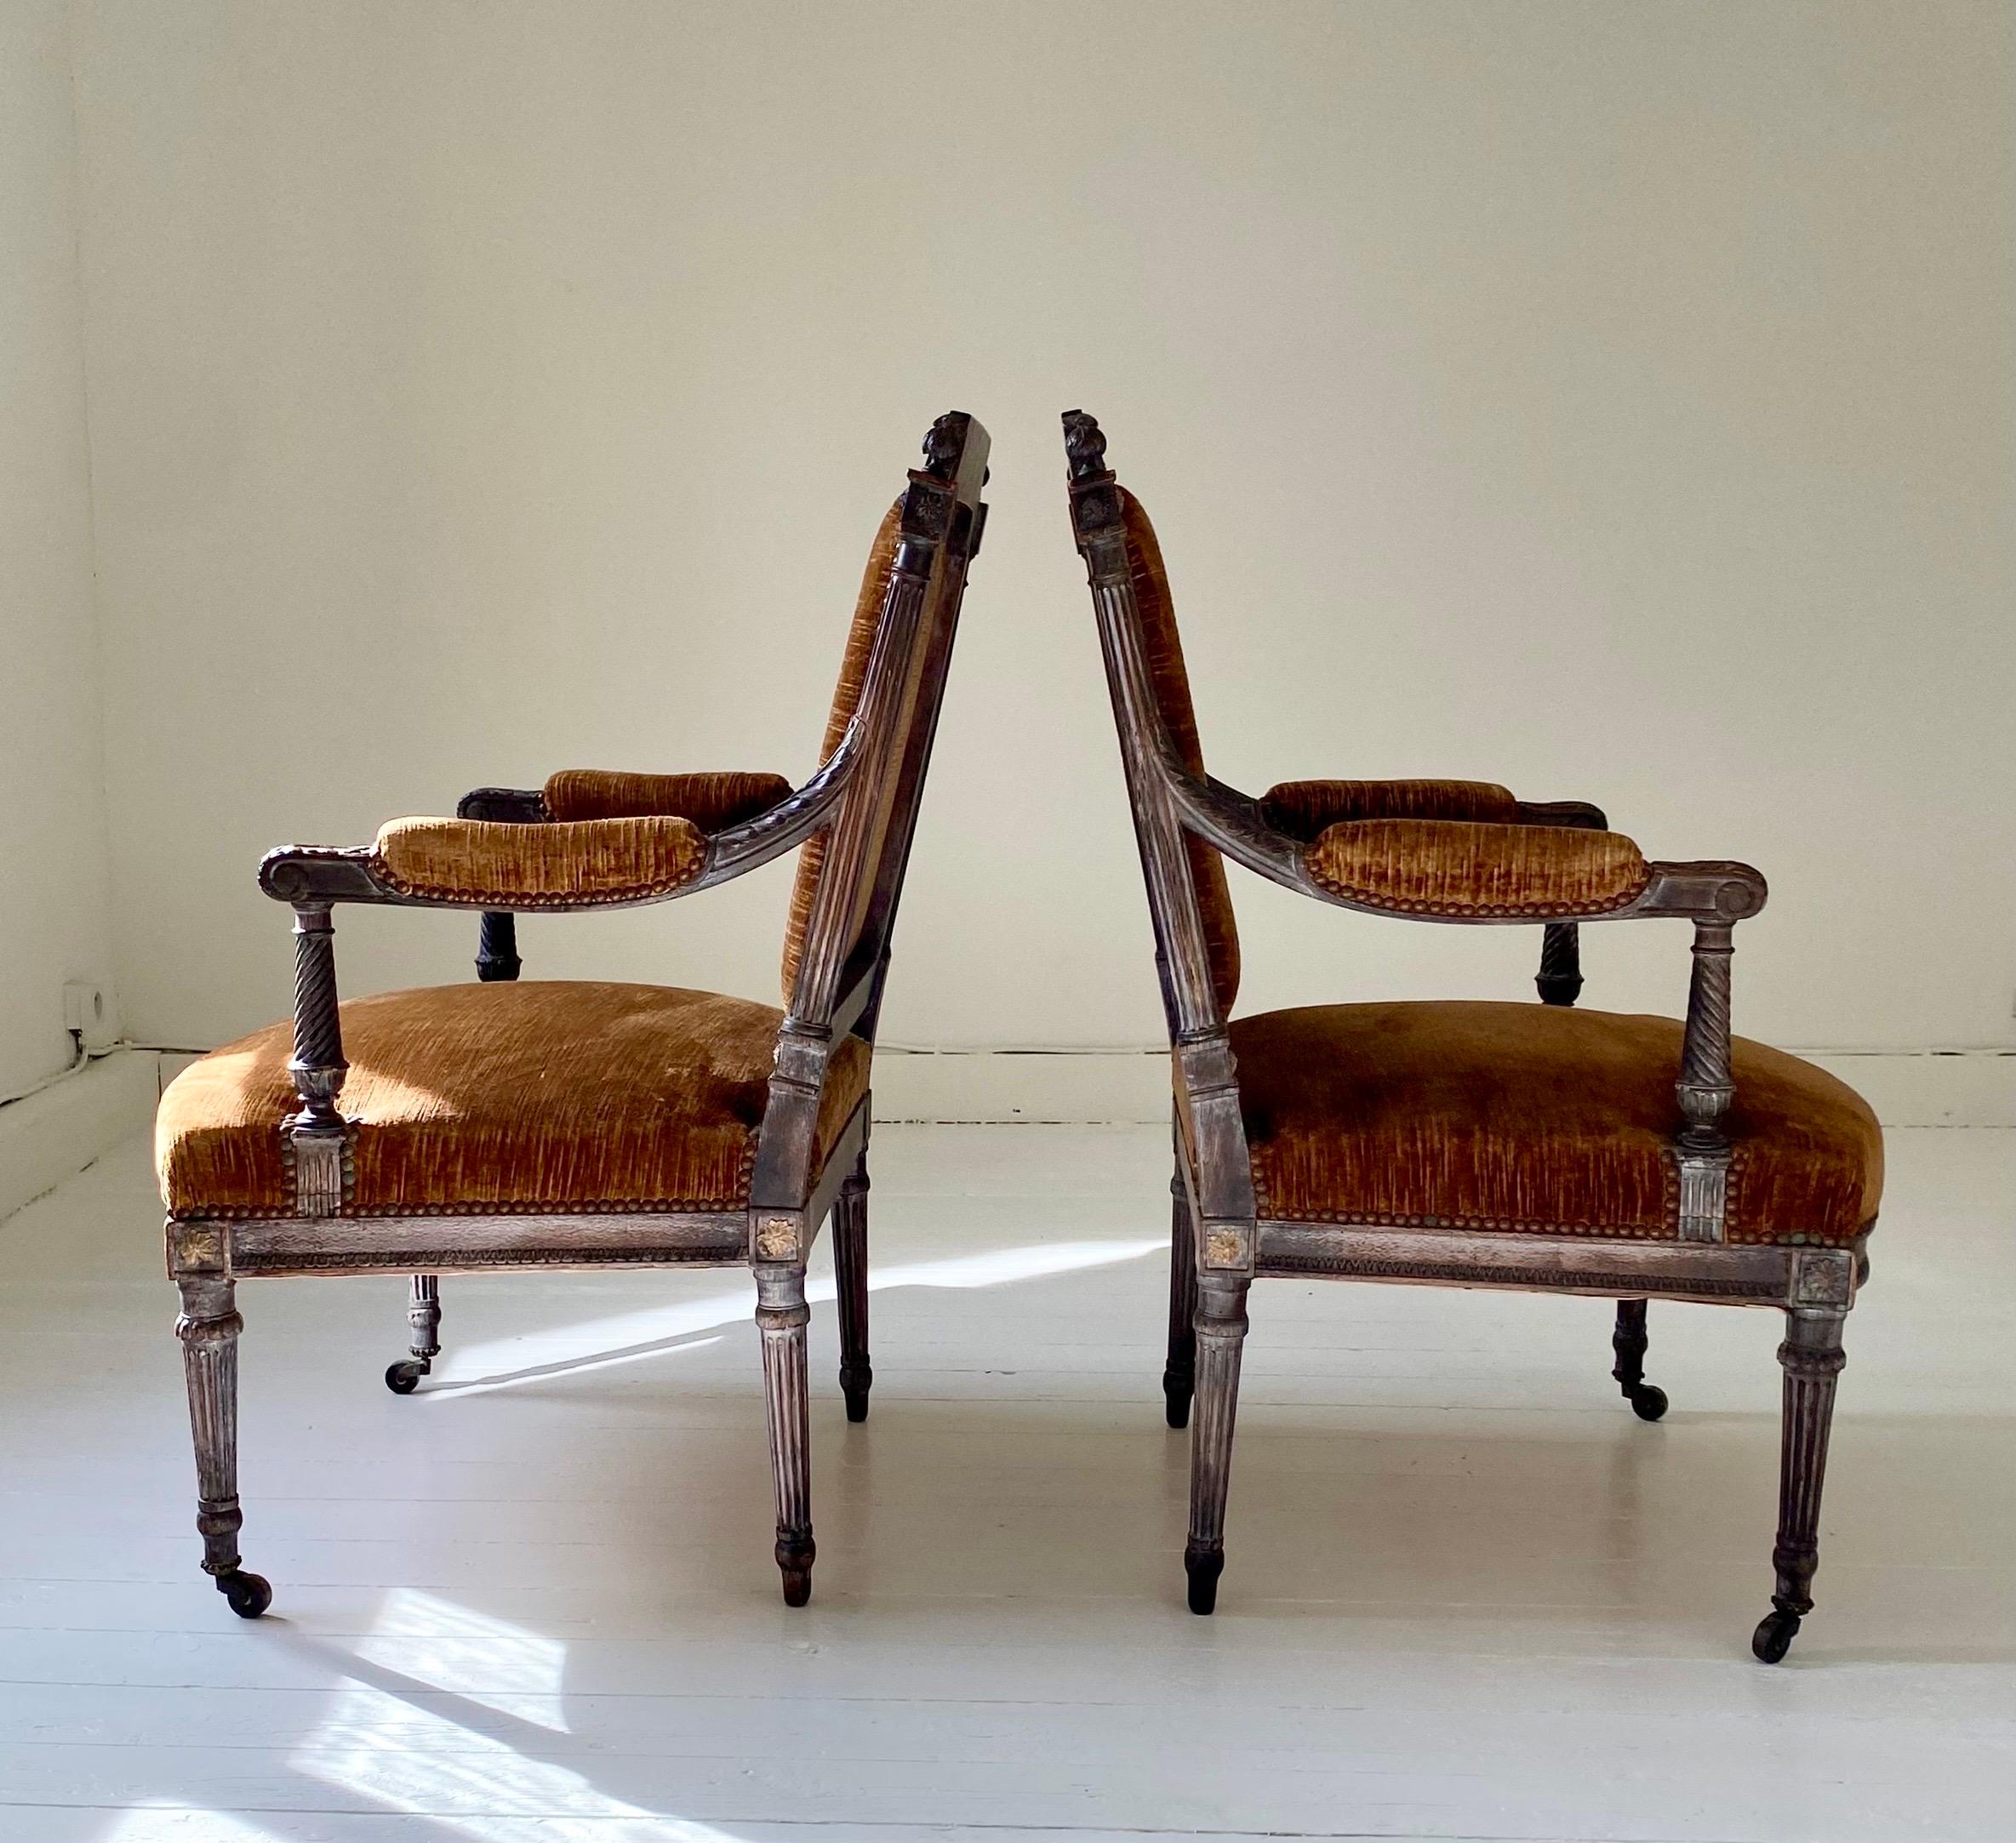 Paire de fauteuils style Louis XVI, datant du XIXème siècle. 
Ces confortables fauteuils en chêne, faits dans les règles de l’art,  sont tapissés de velours de lin chocolat en très bon état. Le travail est raffiné et il y a une belle patine sur le